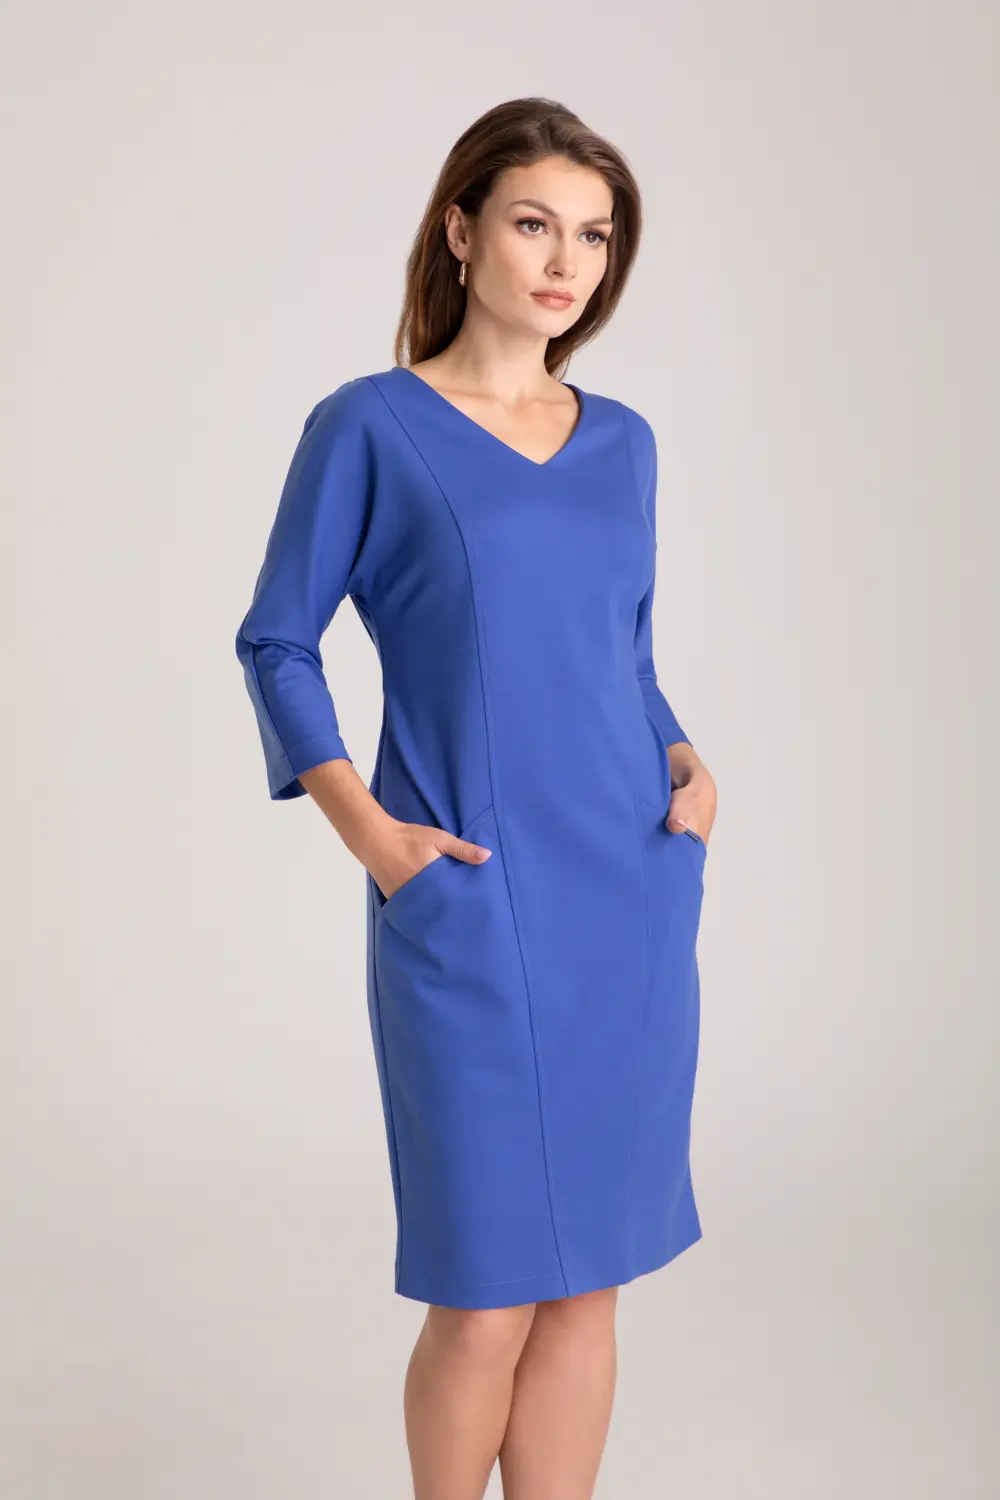 Niebieska dzianinowa sukienka duże rozmiary plus size polska marka Vito Vergelis